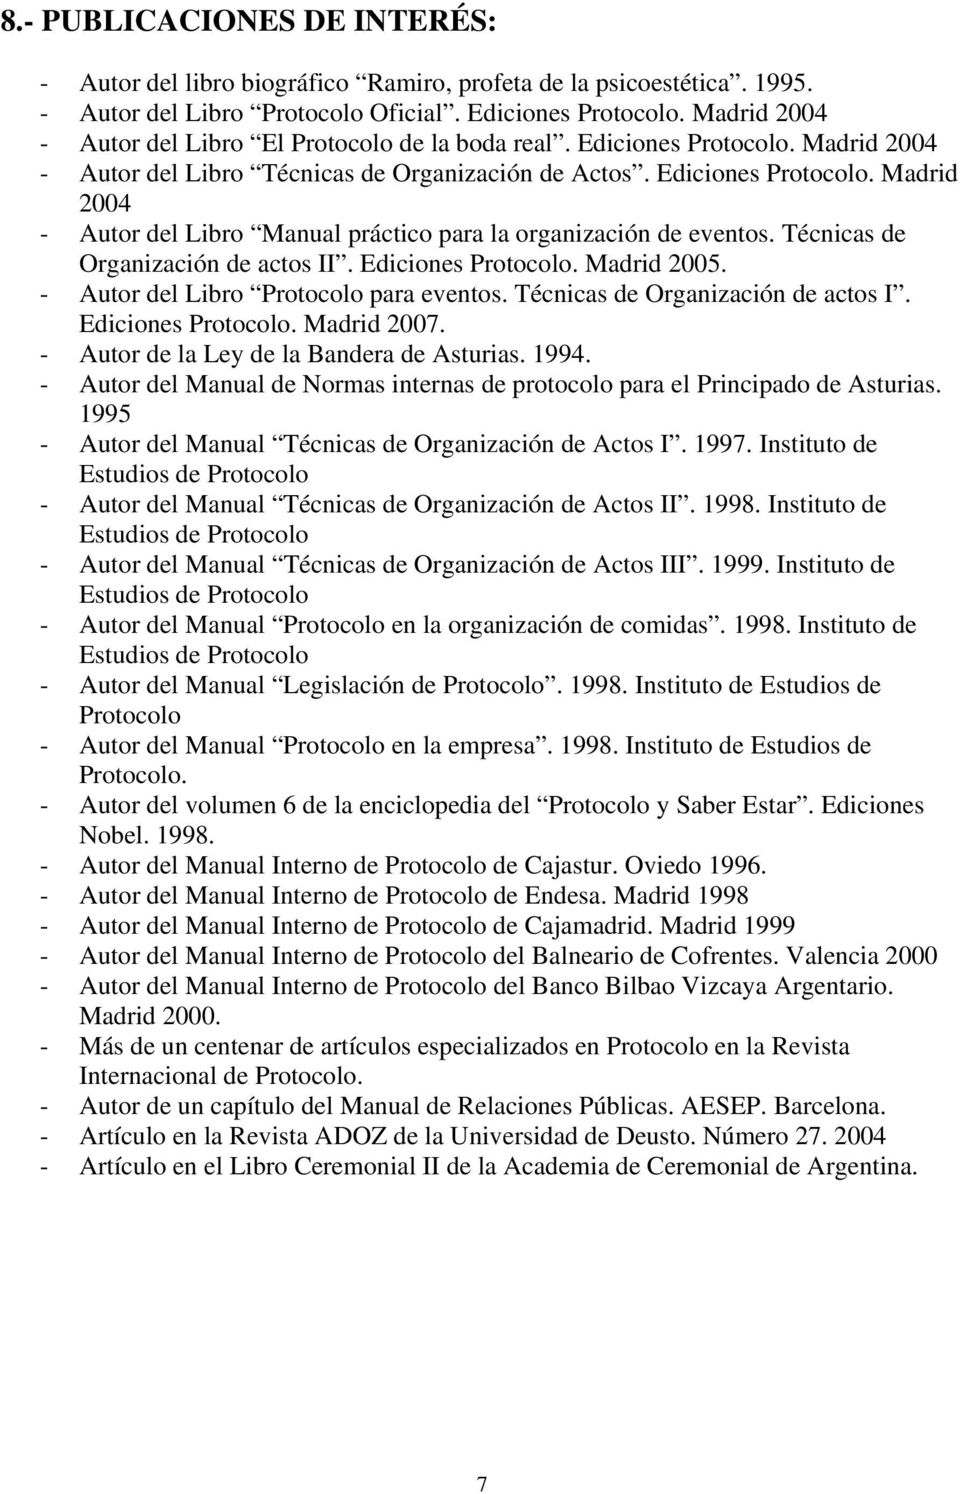 Técnicas de Organización de actos II. Ediciones Protocolo. Madrid 2005. - Autor del Libro Protocolo para eventos. Técnicas de Organización de actos I. Ediciones Protocolo. Madrid 2007.